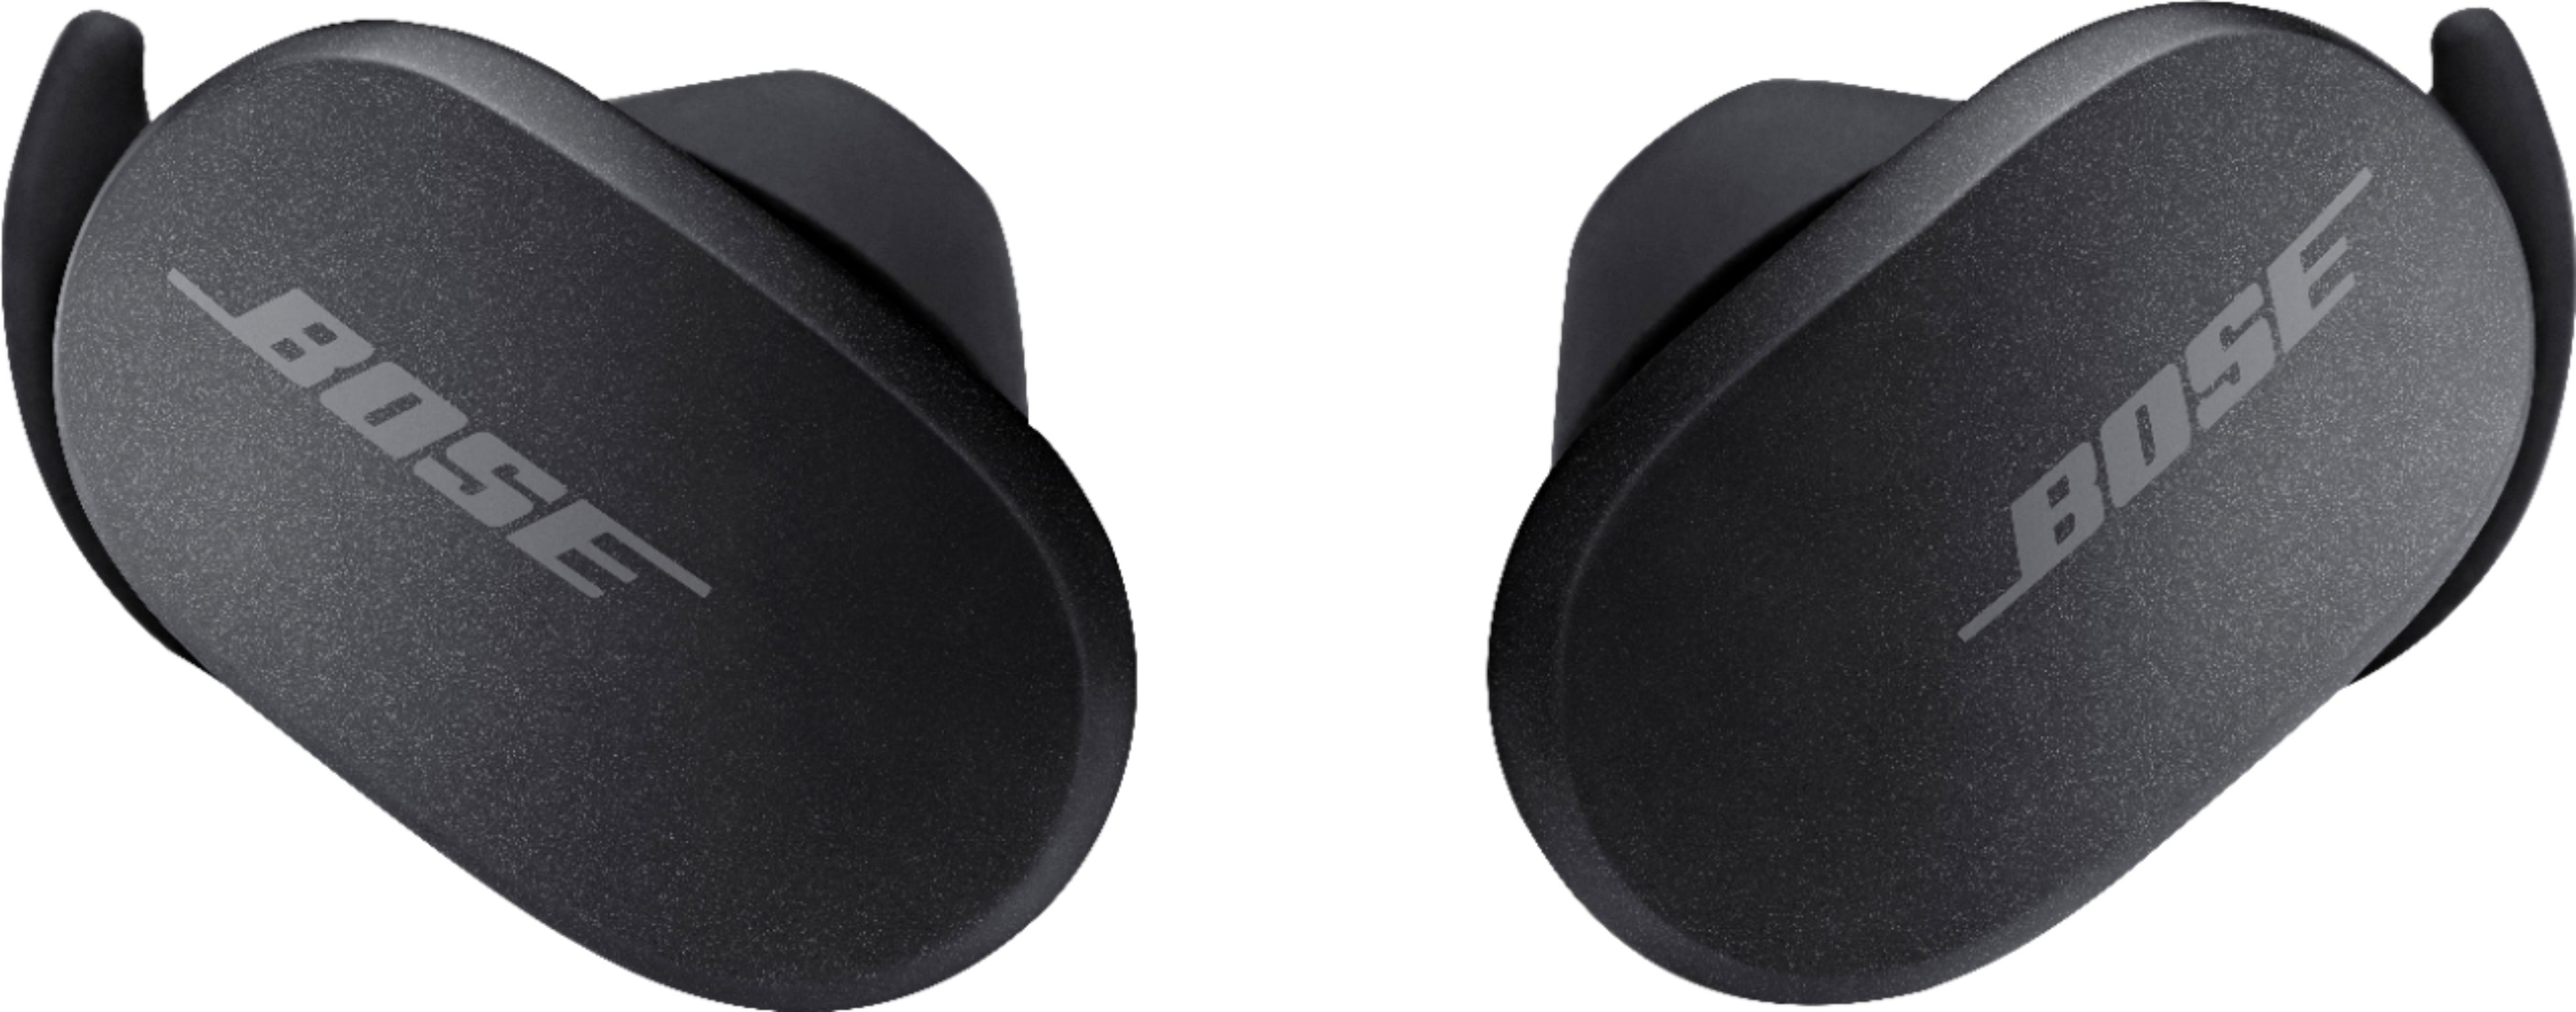 Bose QuietComfort Earbuds True Wireless Noise Cancelling In-Ear